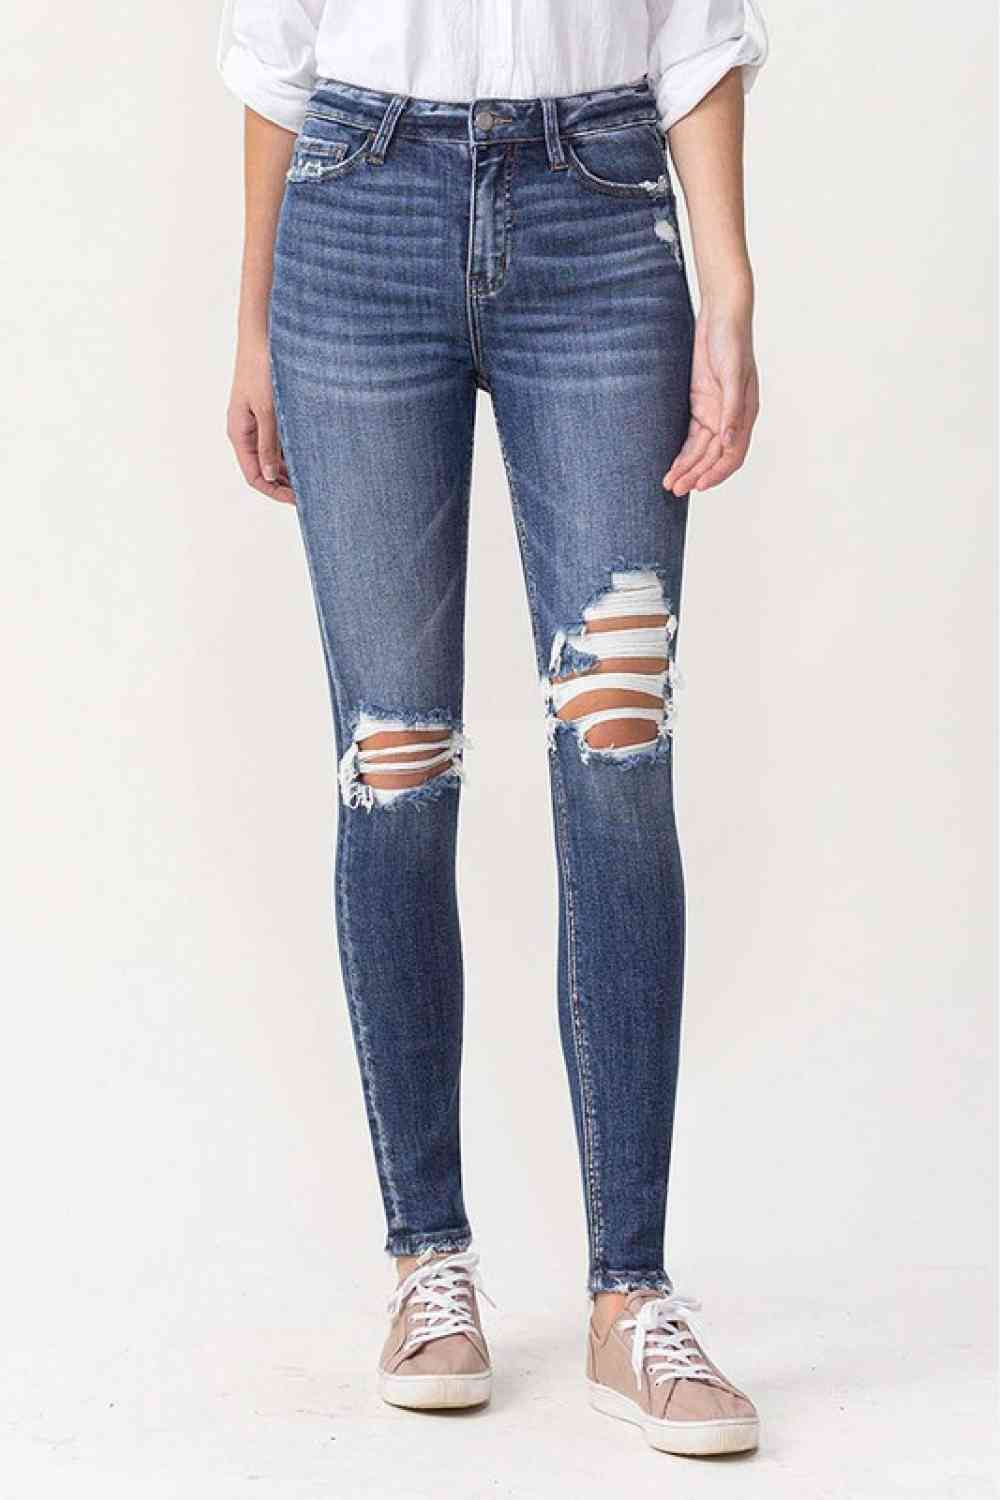 Hayden Lovervet High Rise Skinny Jeans